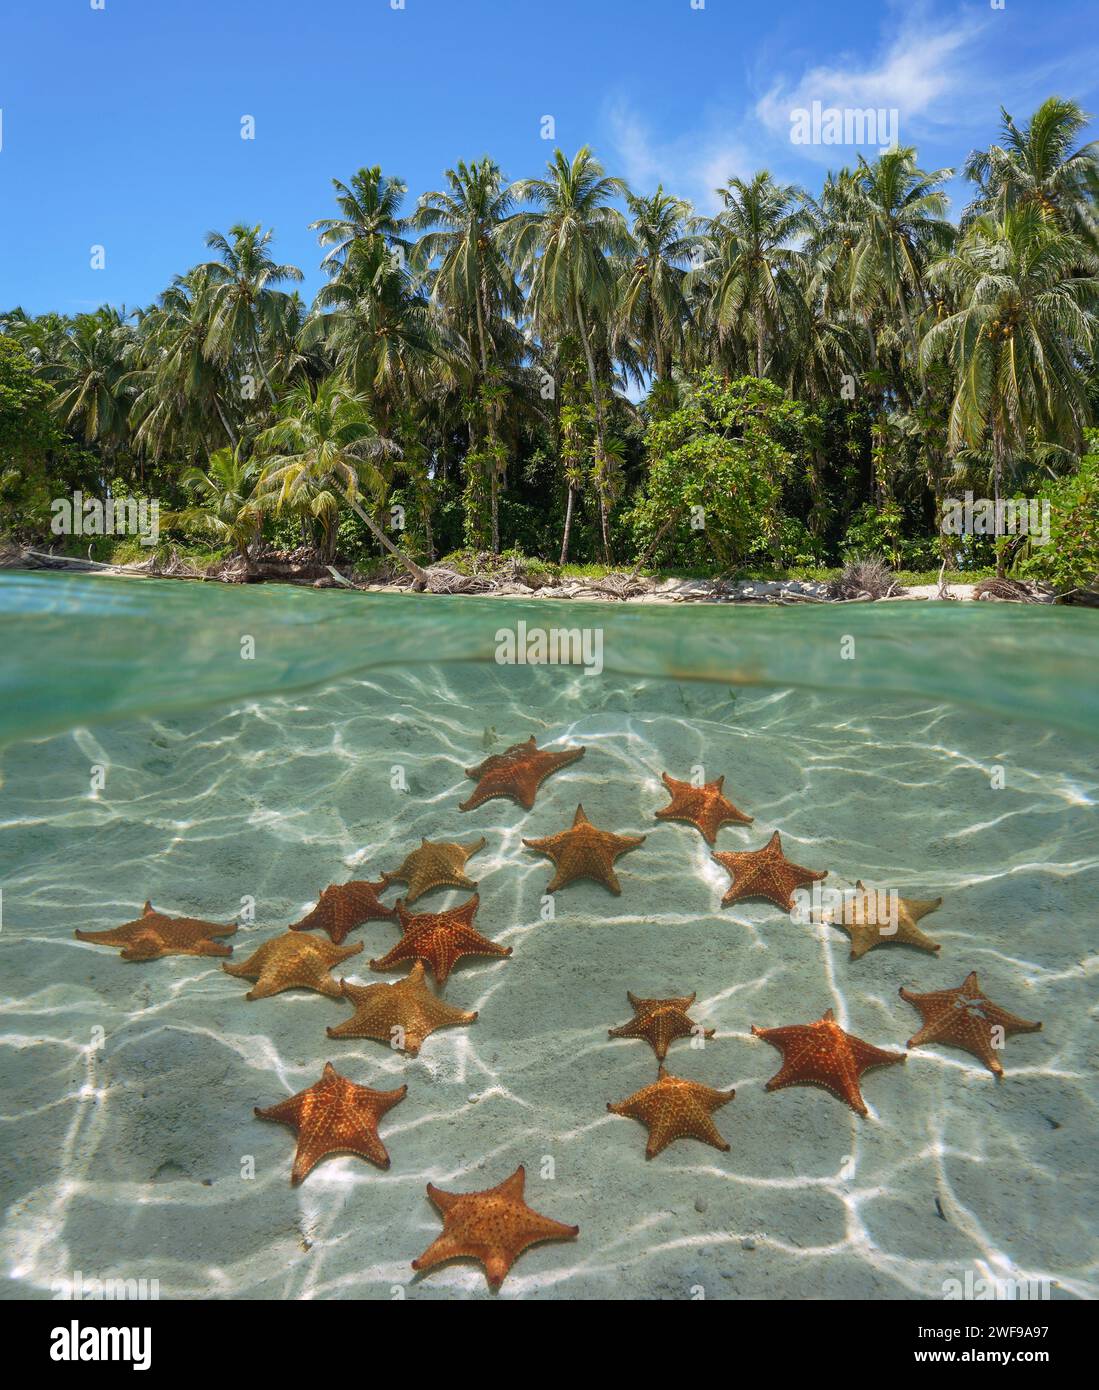 Seesterne unter Wasser auf einem sandigen Meeresboden und tropische Küste mit Palmen, Karibisches Meer, geteilter Blick halb über und unter der Wasseroberfläche, Panama Stockfoto